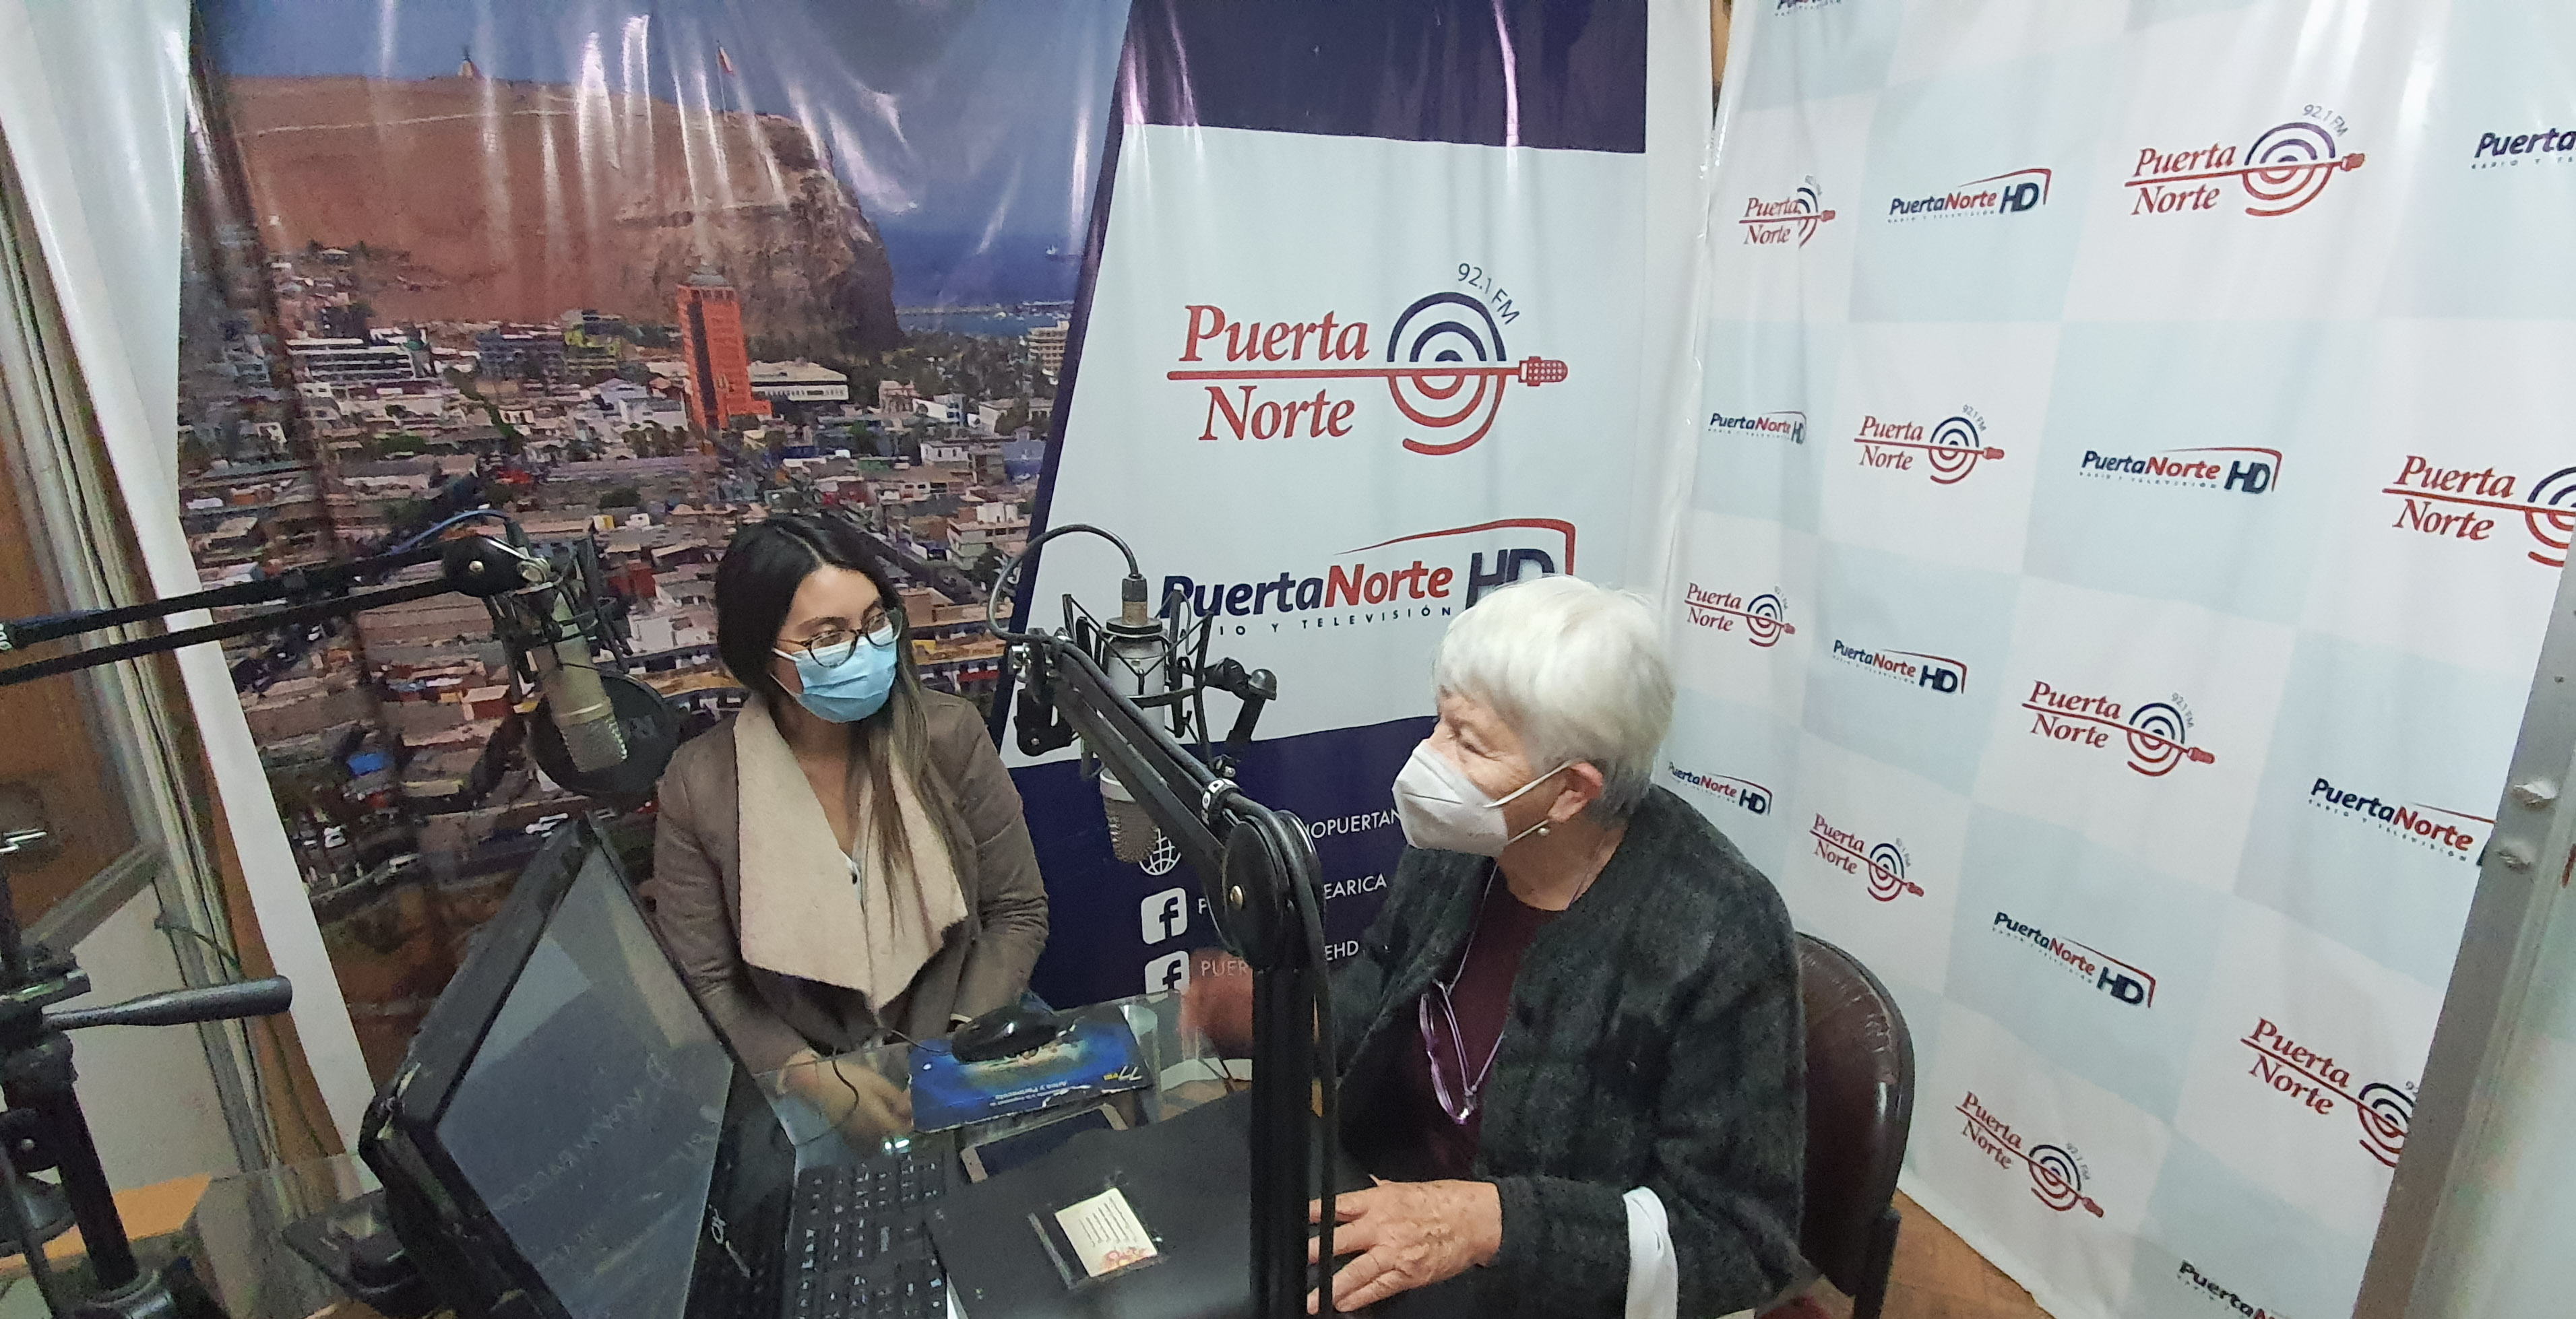 Abogada del convenio CAJTA-SENADIS de Arica y Parinacota, participa en “La hora del A.M” de radio Puerta Norte 92.1 FM